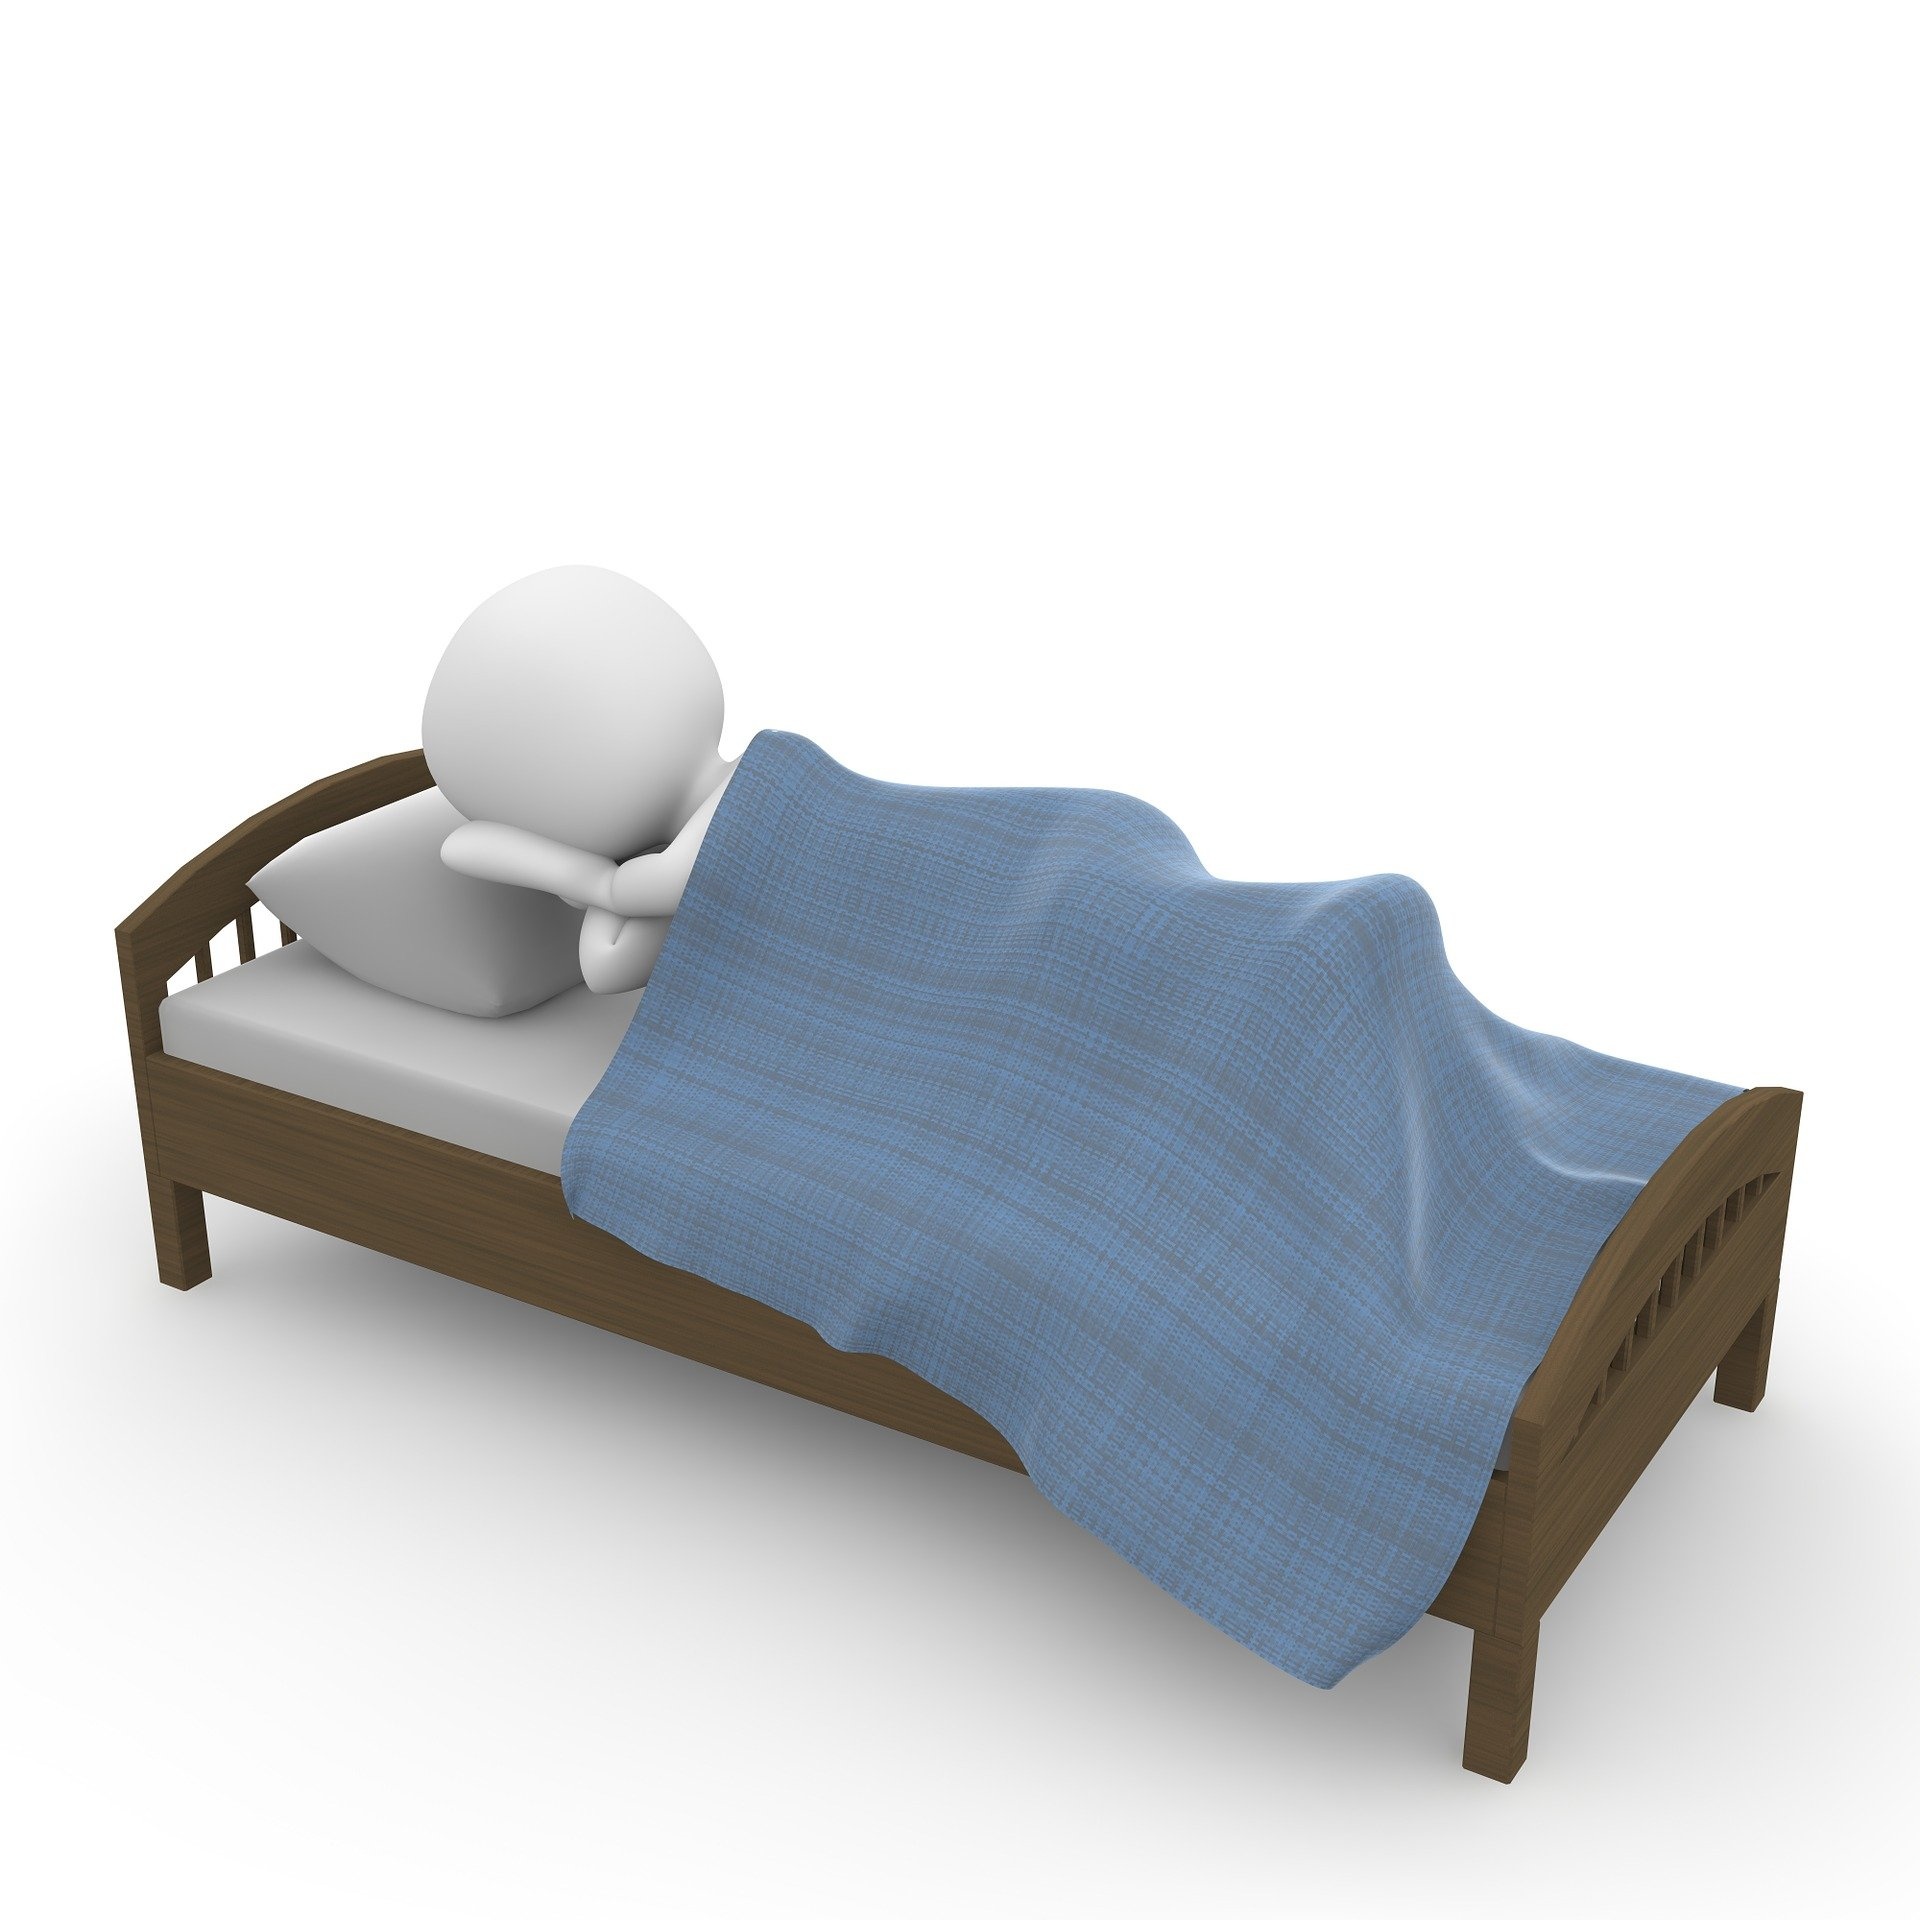 악몽을 자주 꾸는 이유 불규칙한 수면 습관